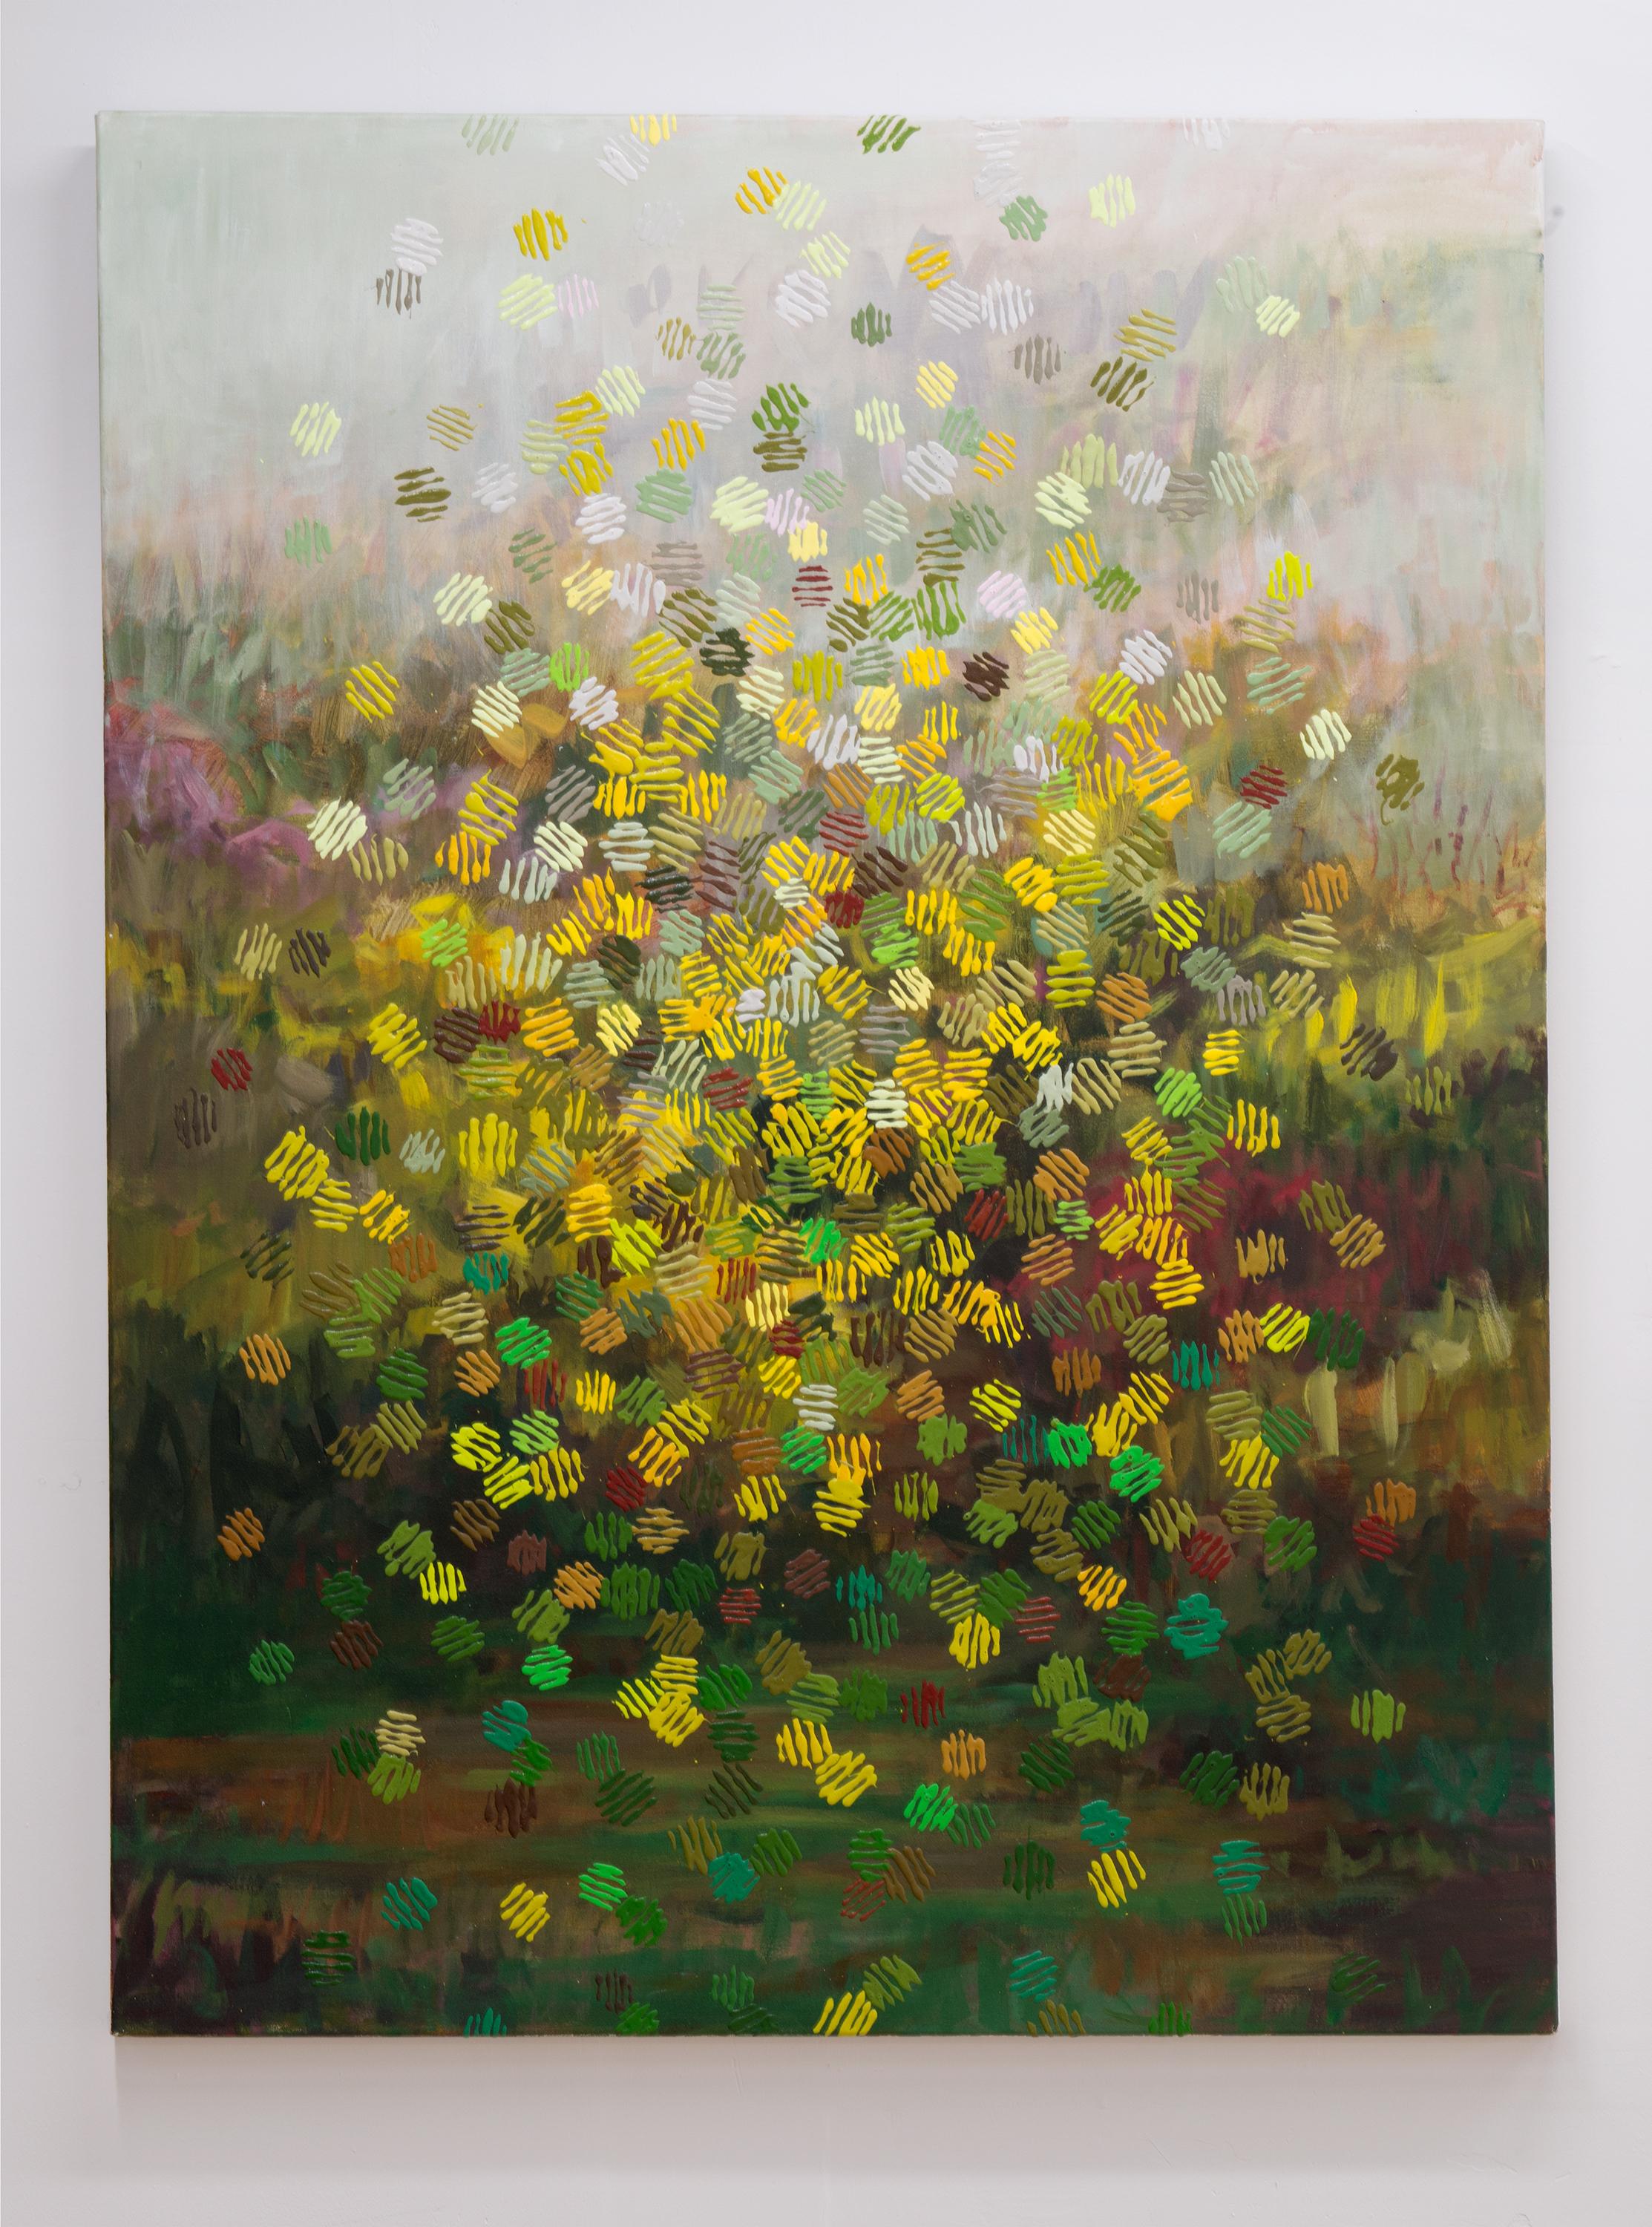 In RAIN BOKEH erweitert Amanda Joy Brown die Tradition der Landschaftsmalerei durch die Verwendung von mehrfarbigen Überlagerungen. Der Blick durch ein verregnetes Glasfenster auf ein Feld inspirierte sie zu einer nebligen Landschaft, die sie mit